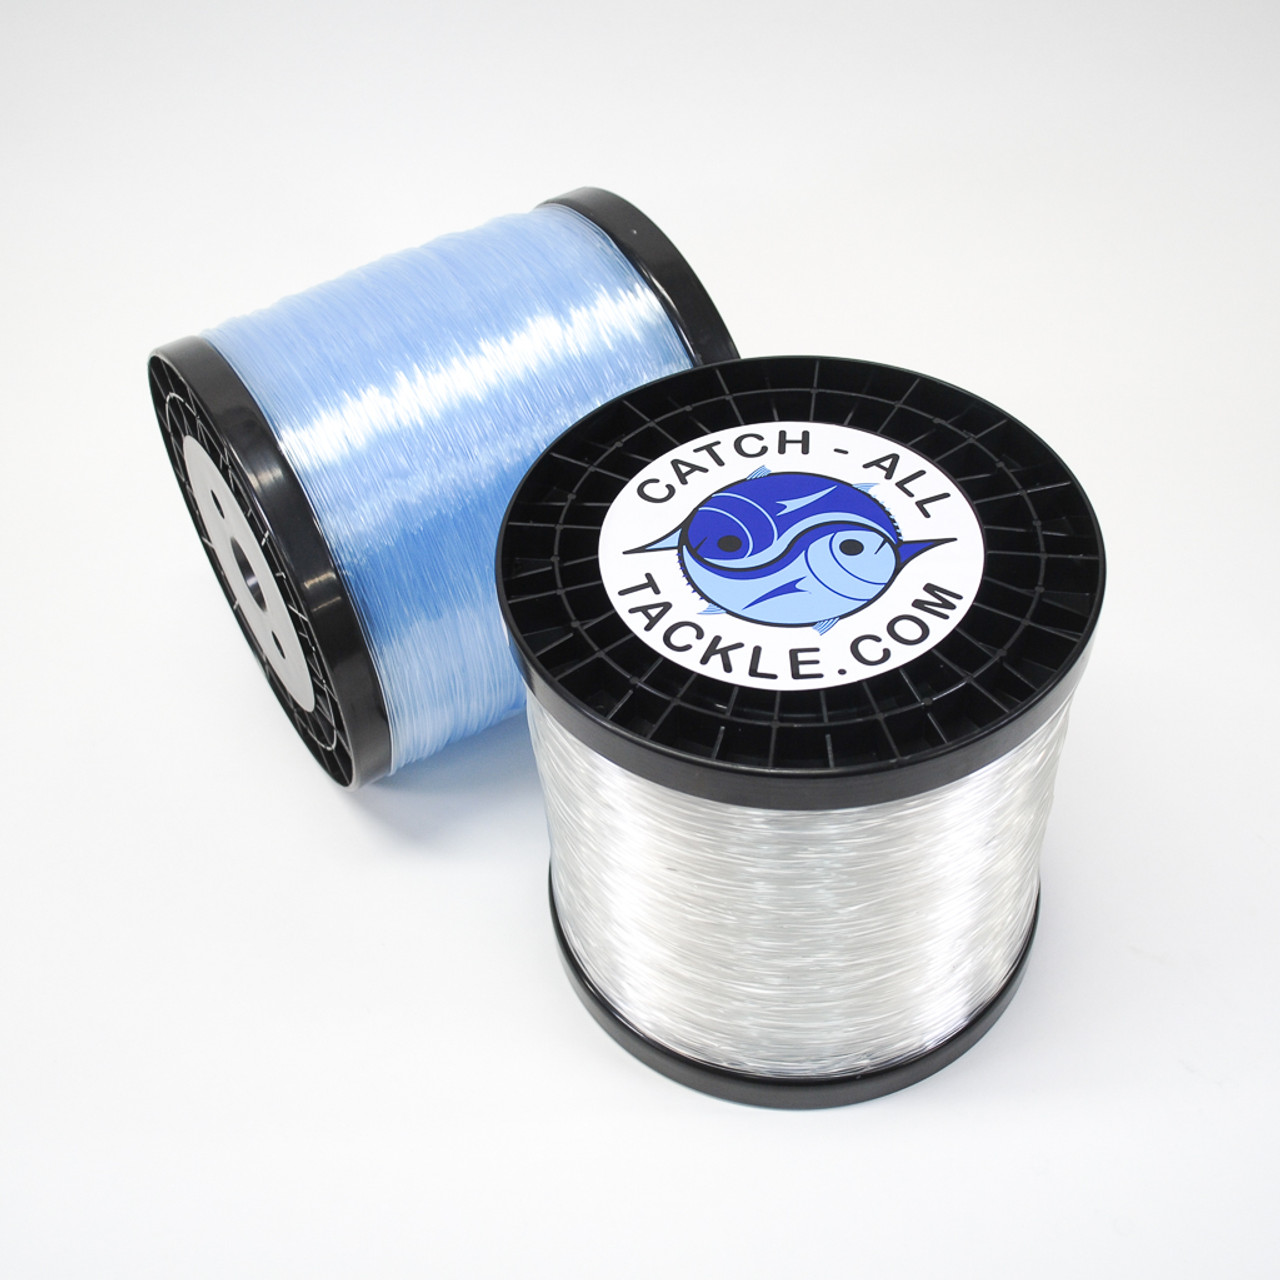 500m Spool of 8lb Shogun Ice Blue Monofilament Fishing Line - Grey